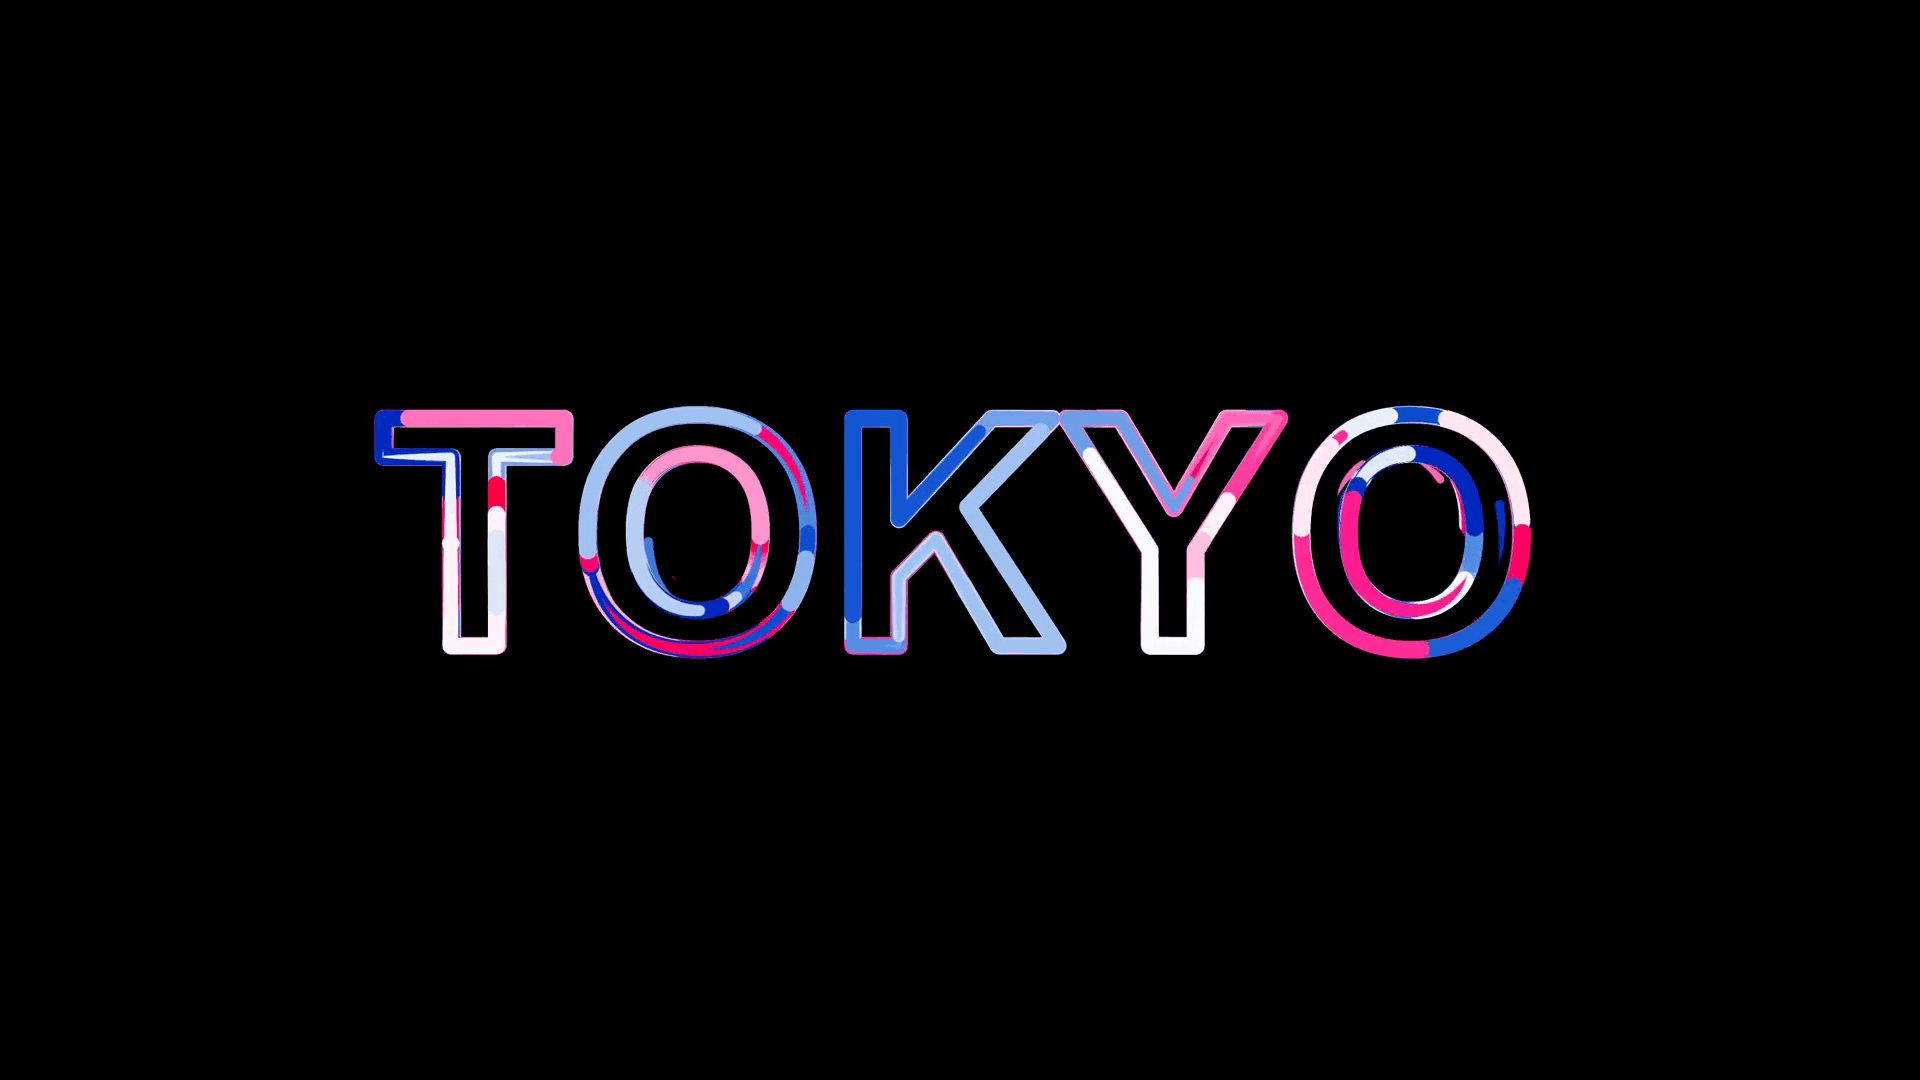 Tokyo Word Wallpaper Top Background